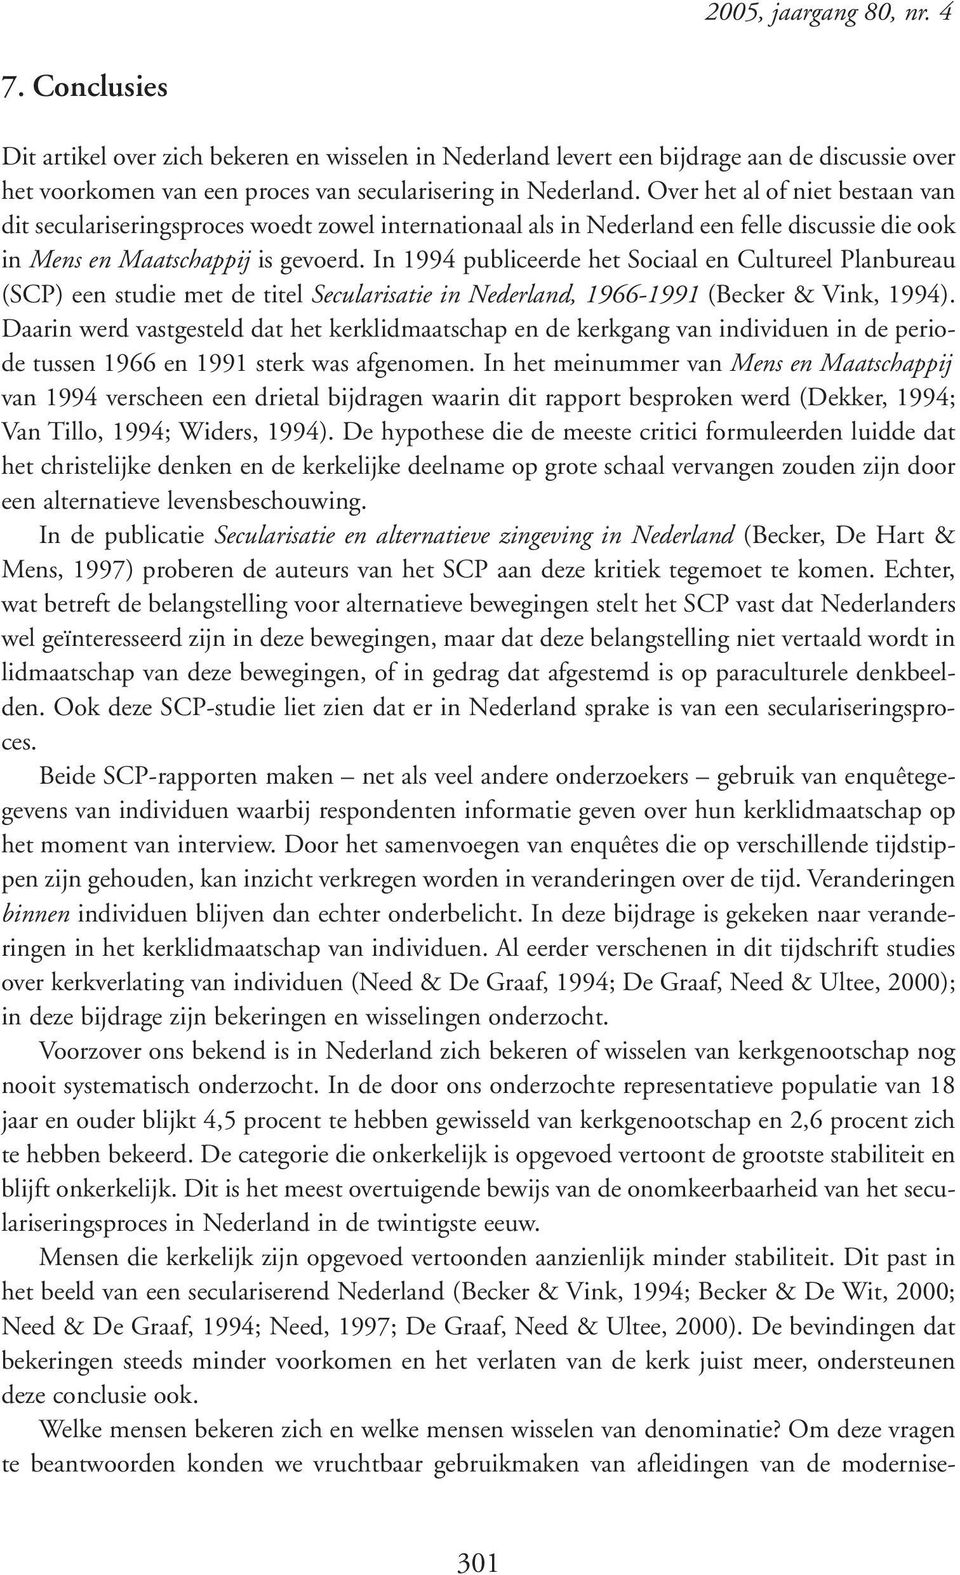 In 1994 publiceerde het Sociaal en Cultureel Planbureau (SCP) een studie met de titel Secularisatie in Nederland, 1966-1991 (Becker & Vink, 1994).